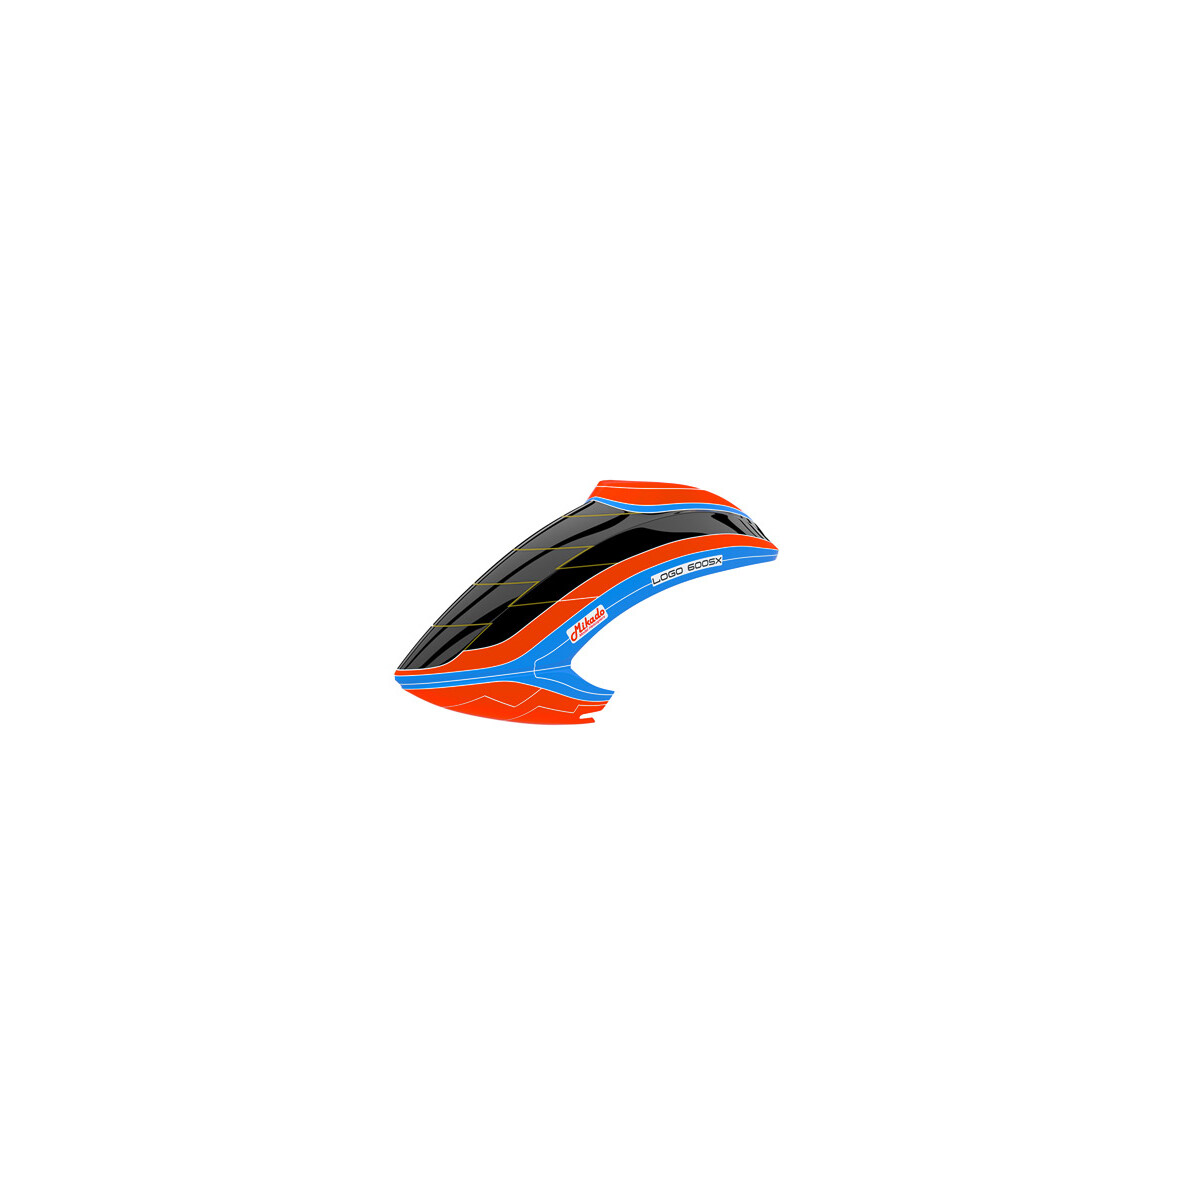 Haube LOGO 600 SX V3, neon-orange/blau